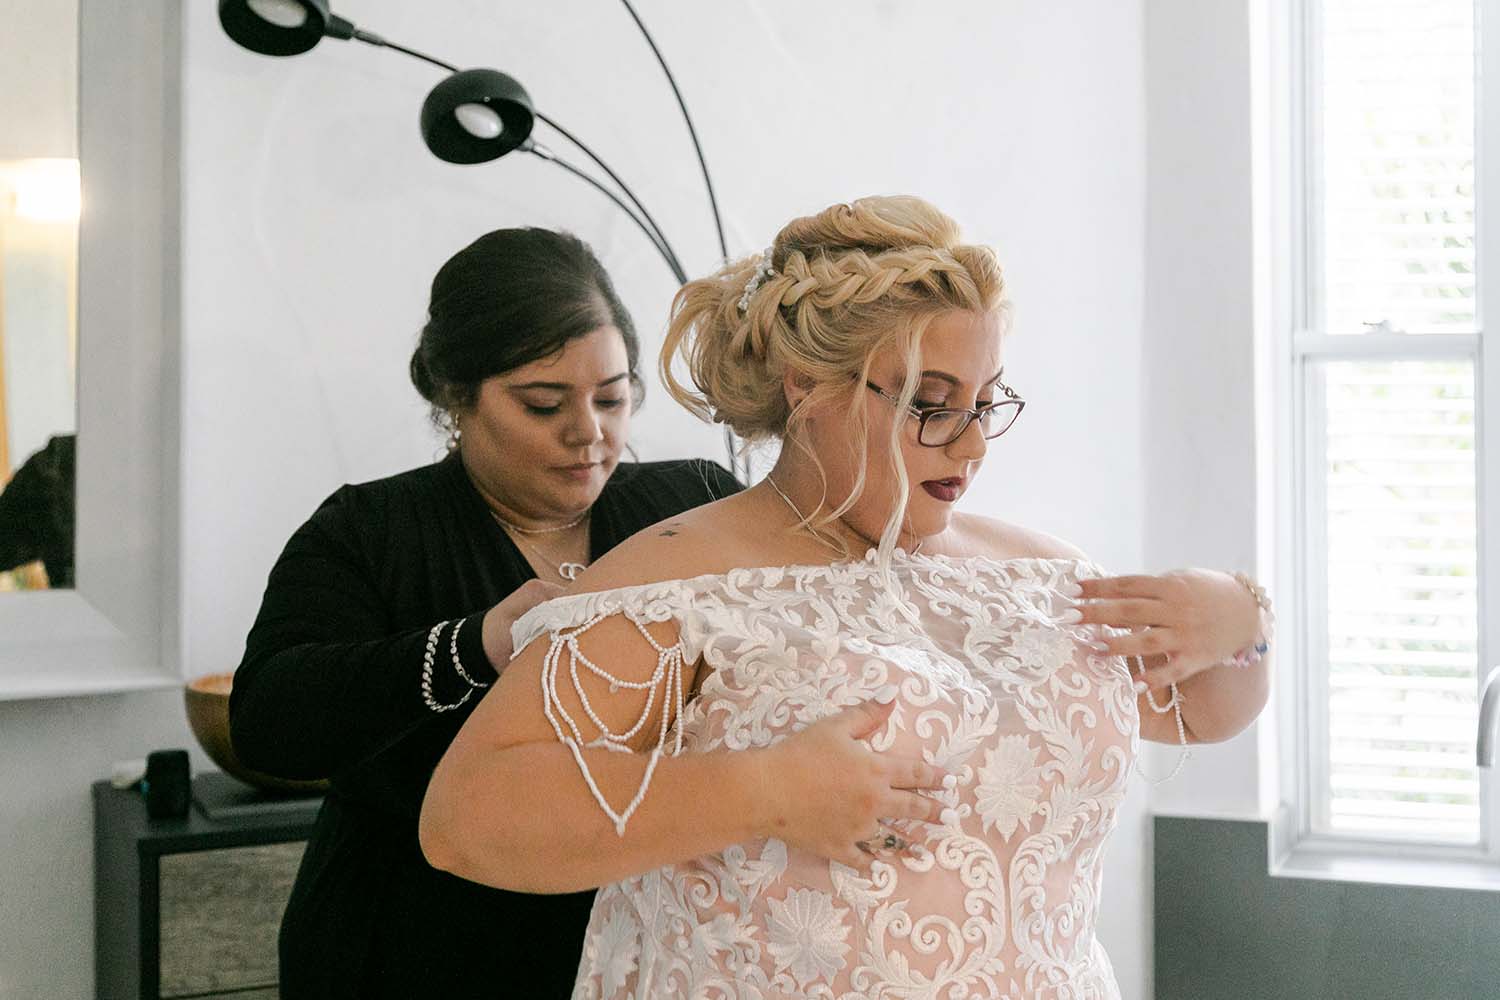 Destination Wedding Photography - Bride getting ready